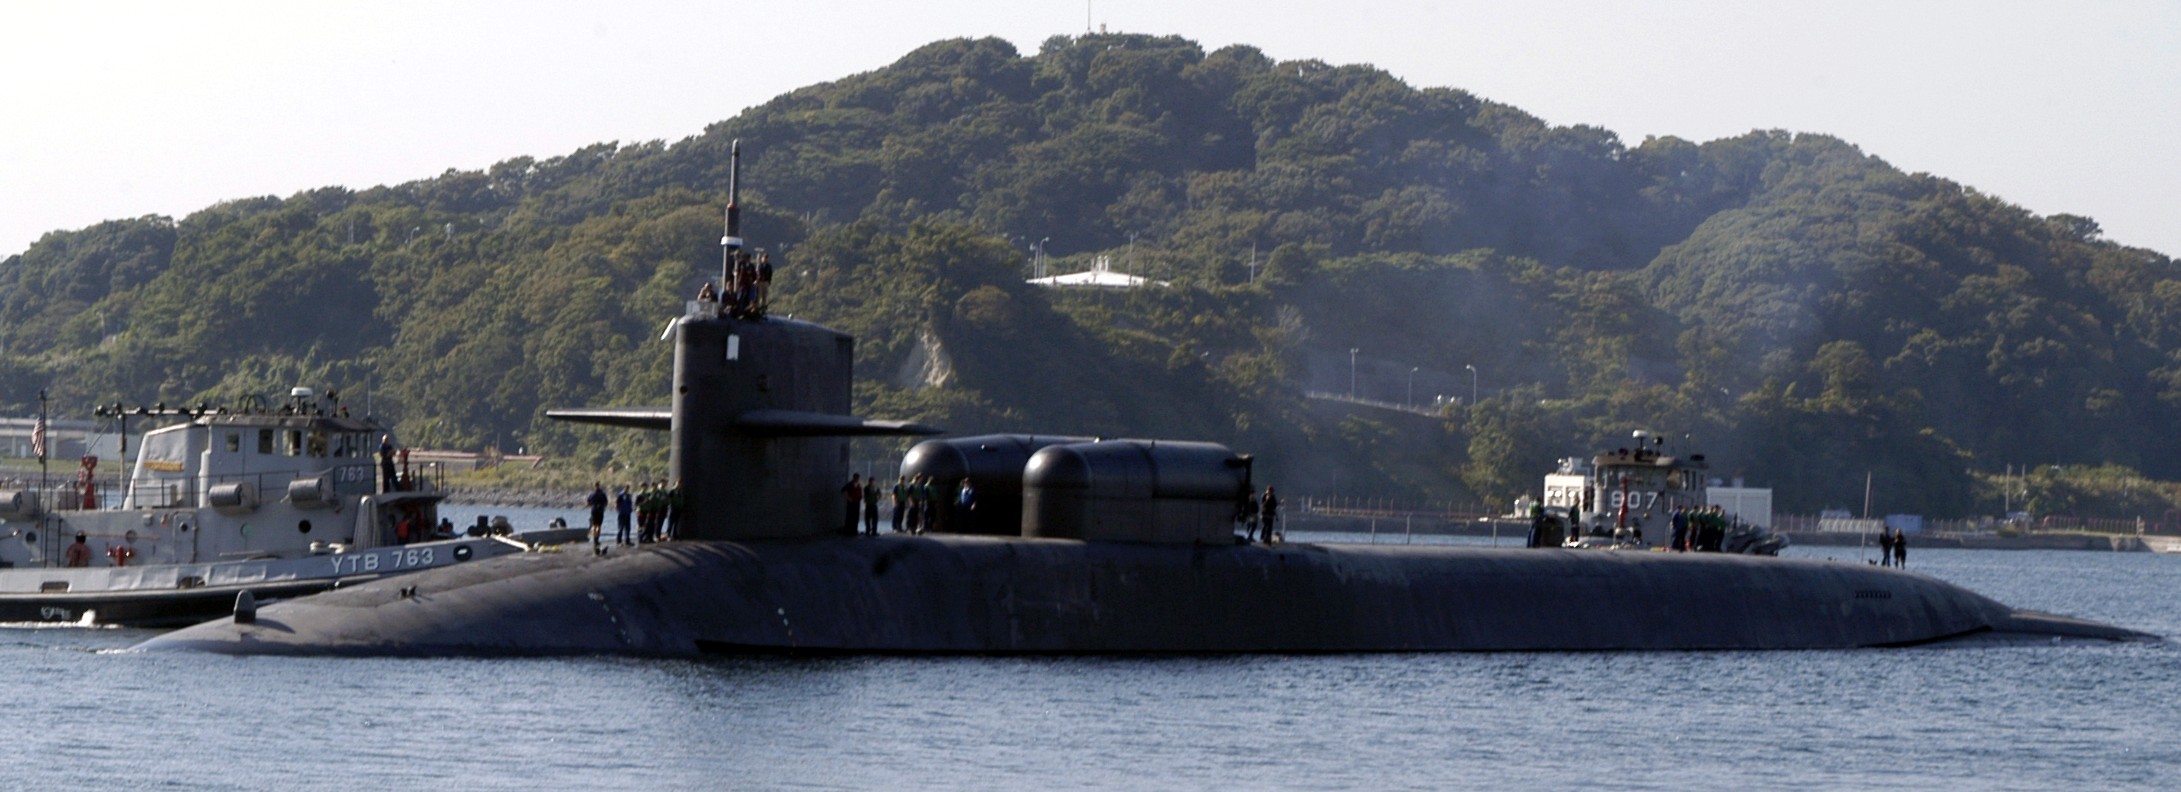 ssgn-726 uss ohio guided missile submarine us navy 2008 40 yokosuka